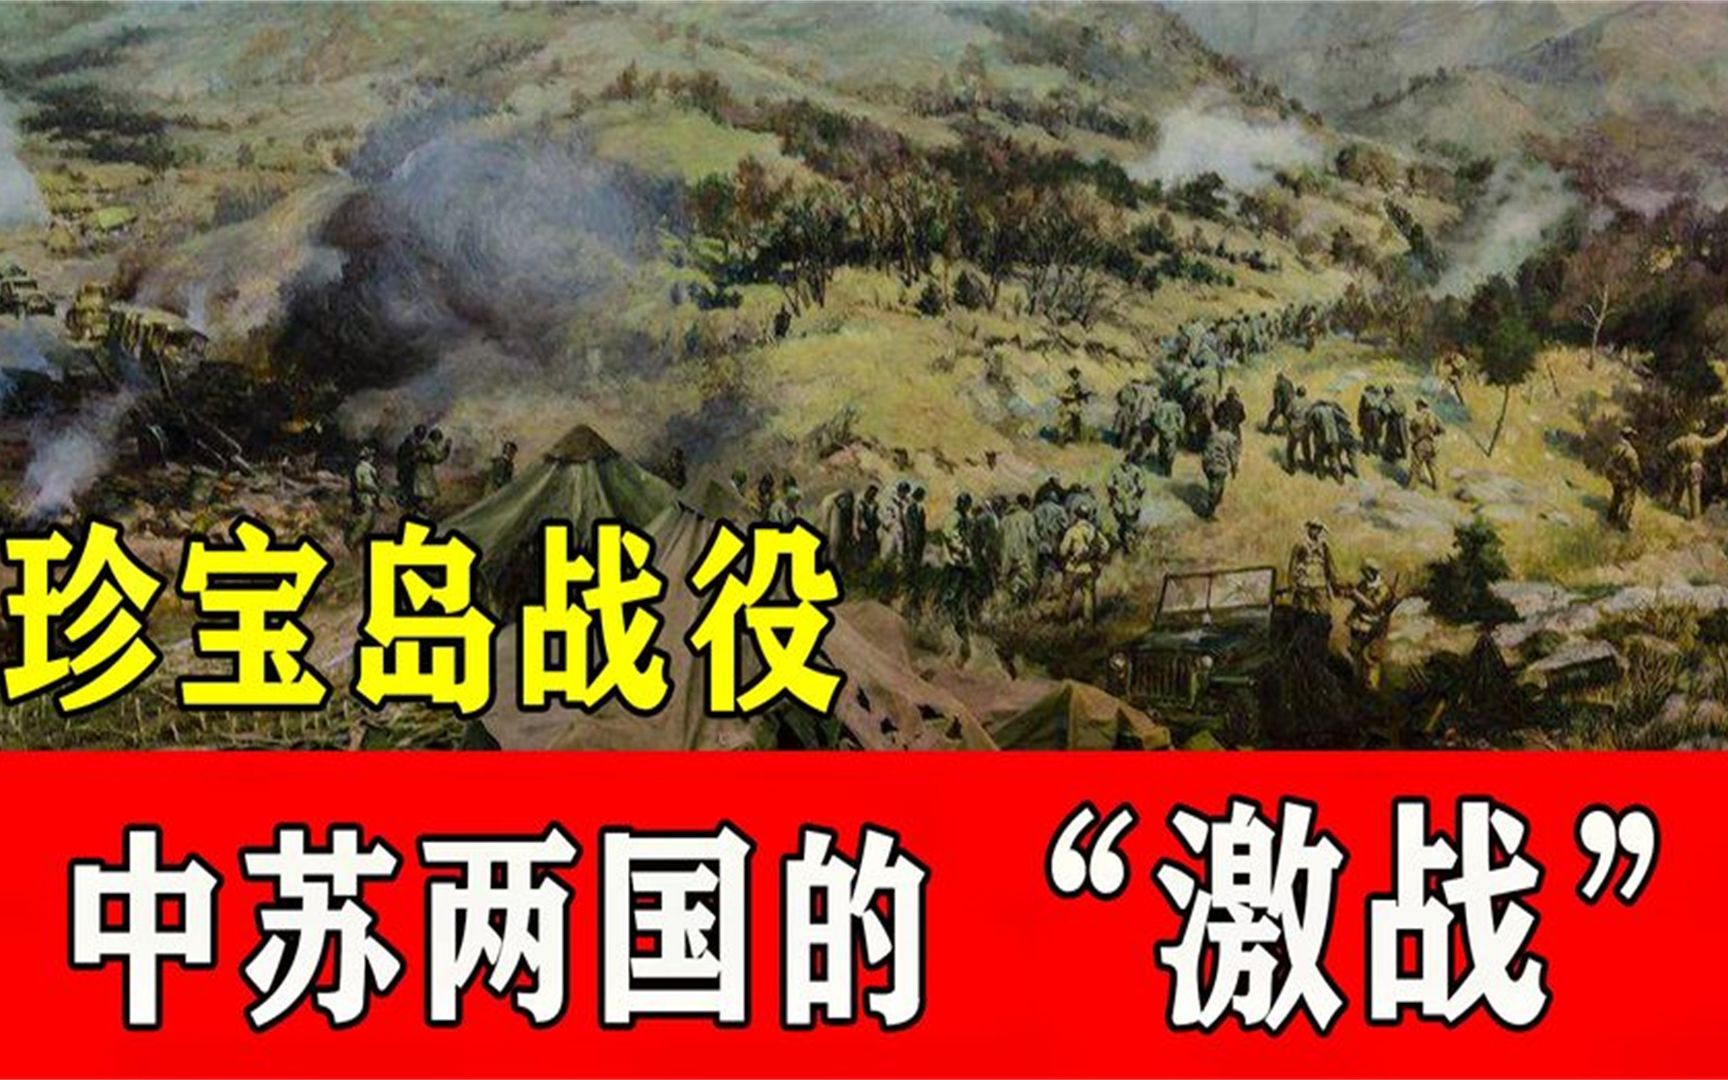 中苏珍宝岛战役纪录片图片